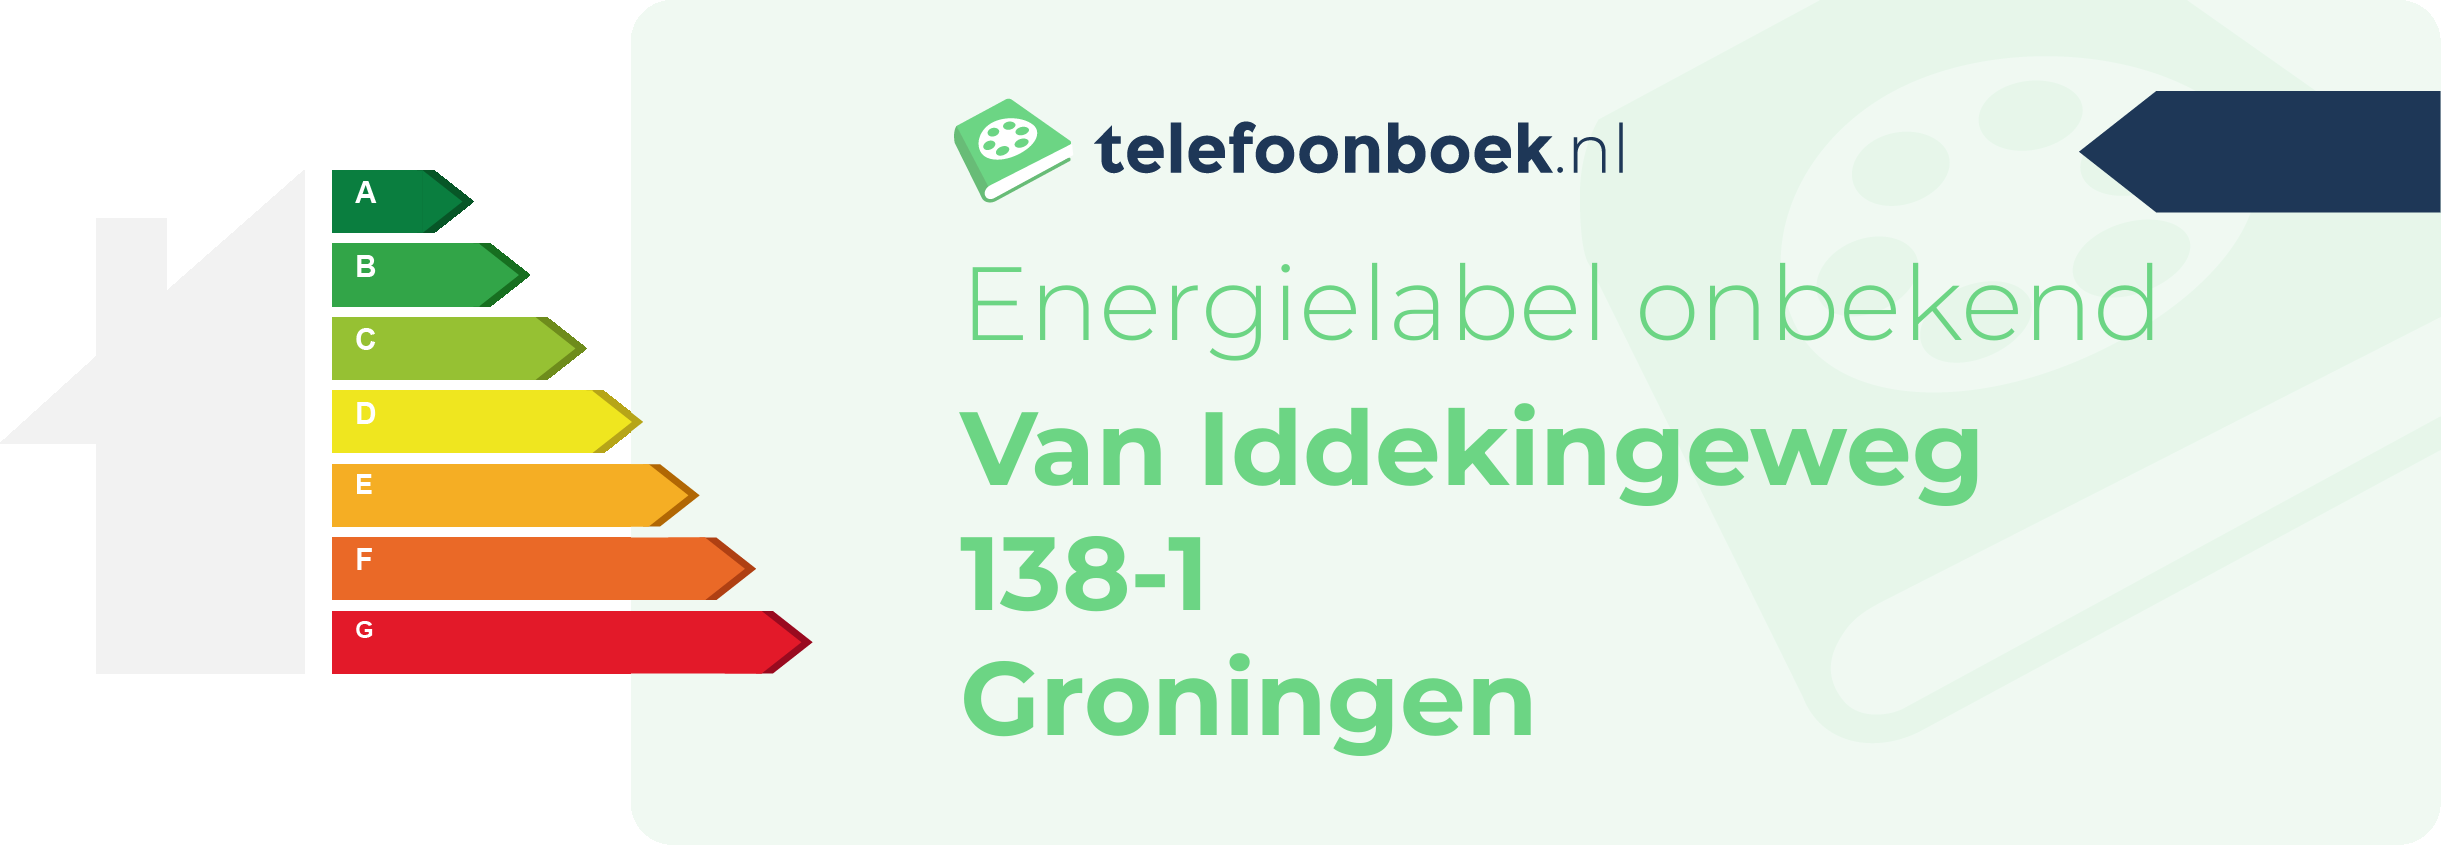 Energielabel Van Iddekingeweg 138-1 Groningen